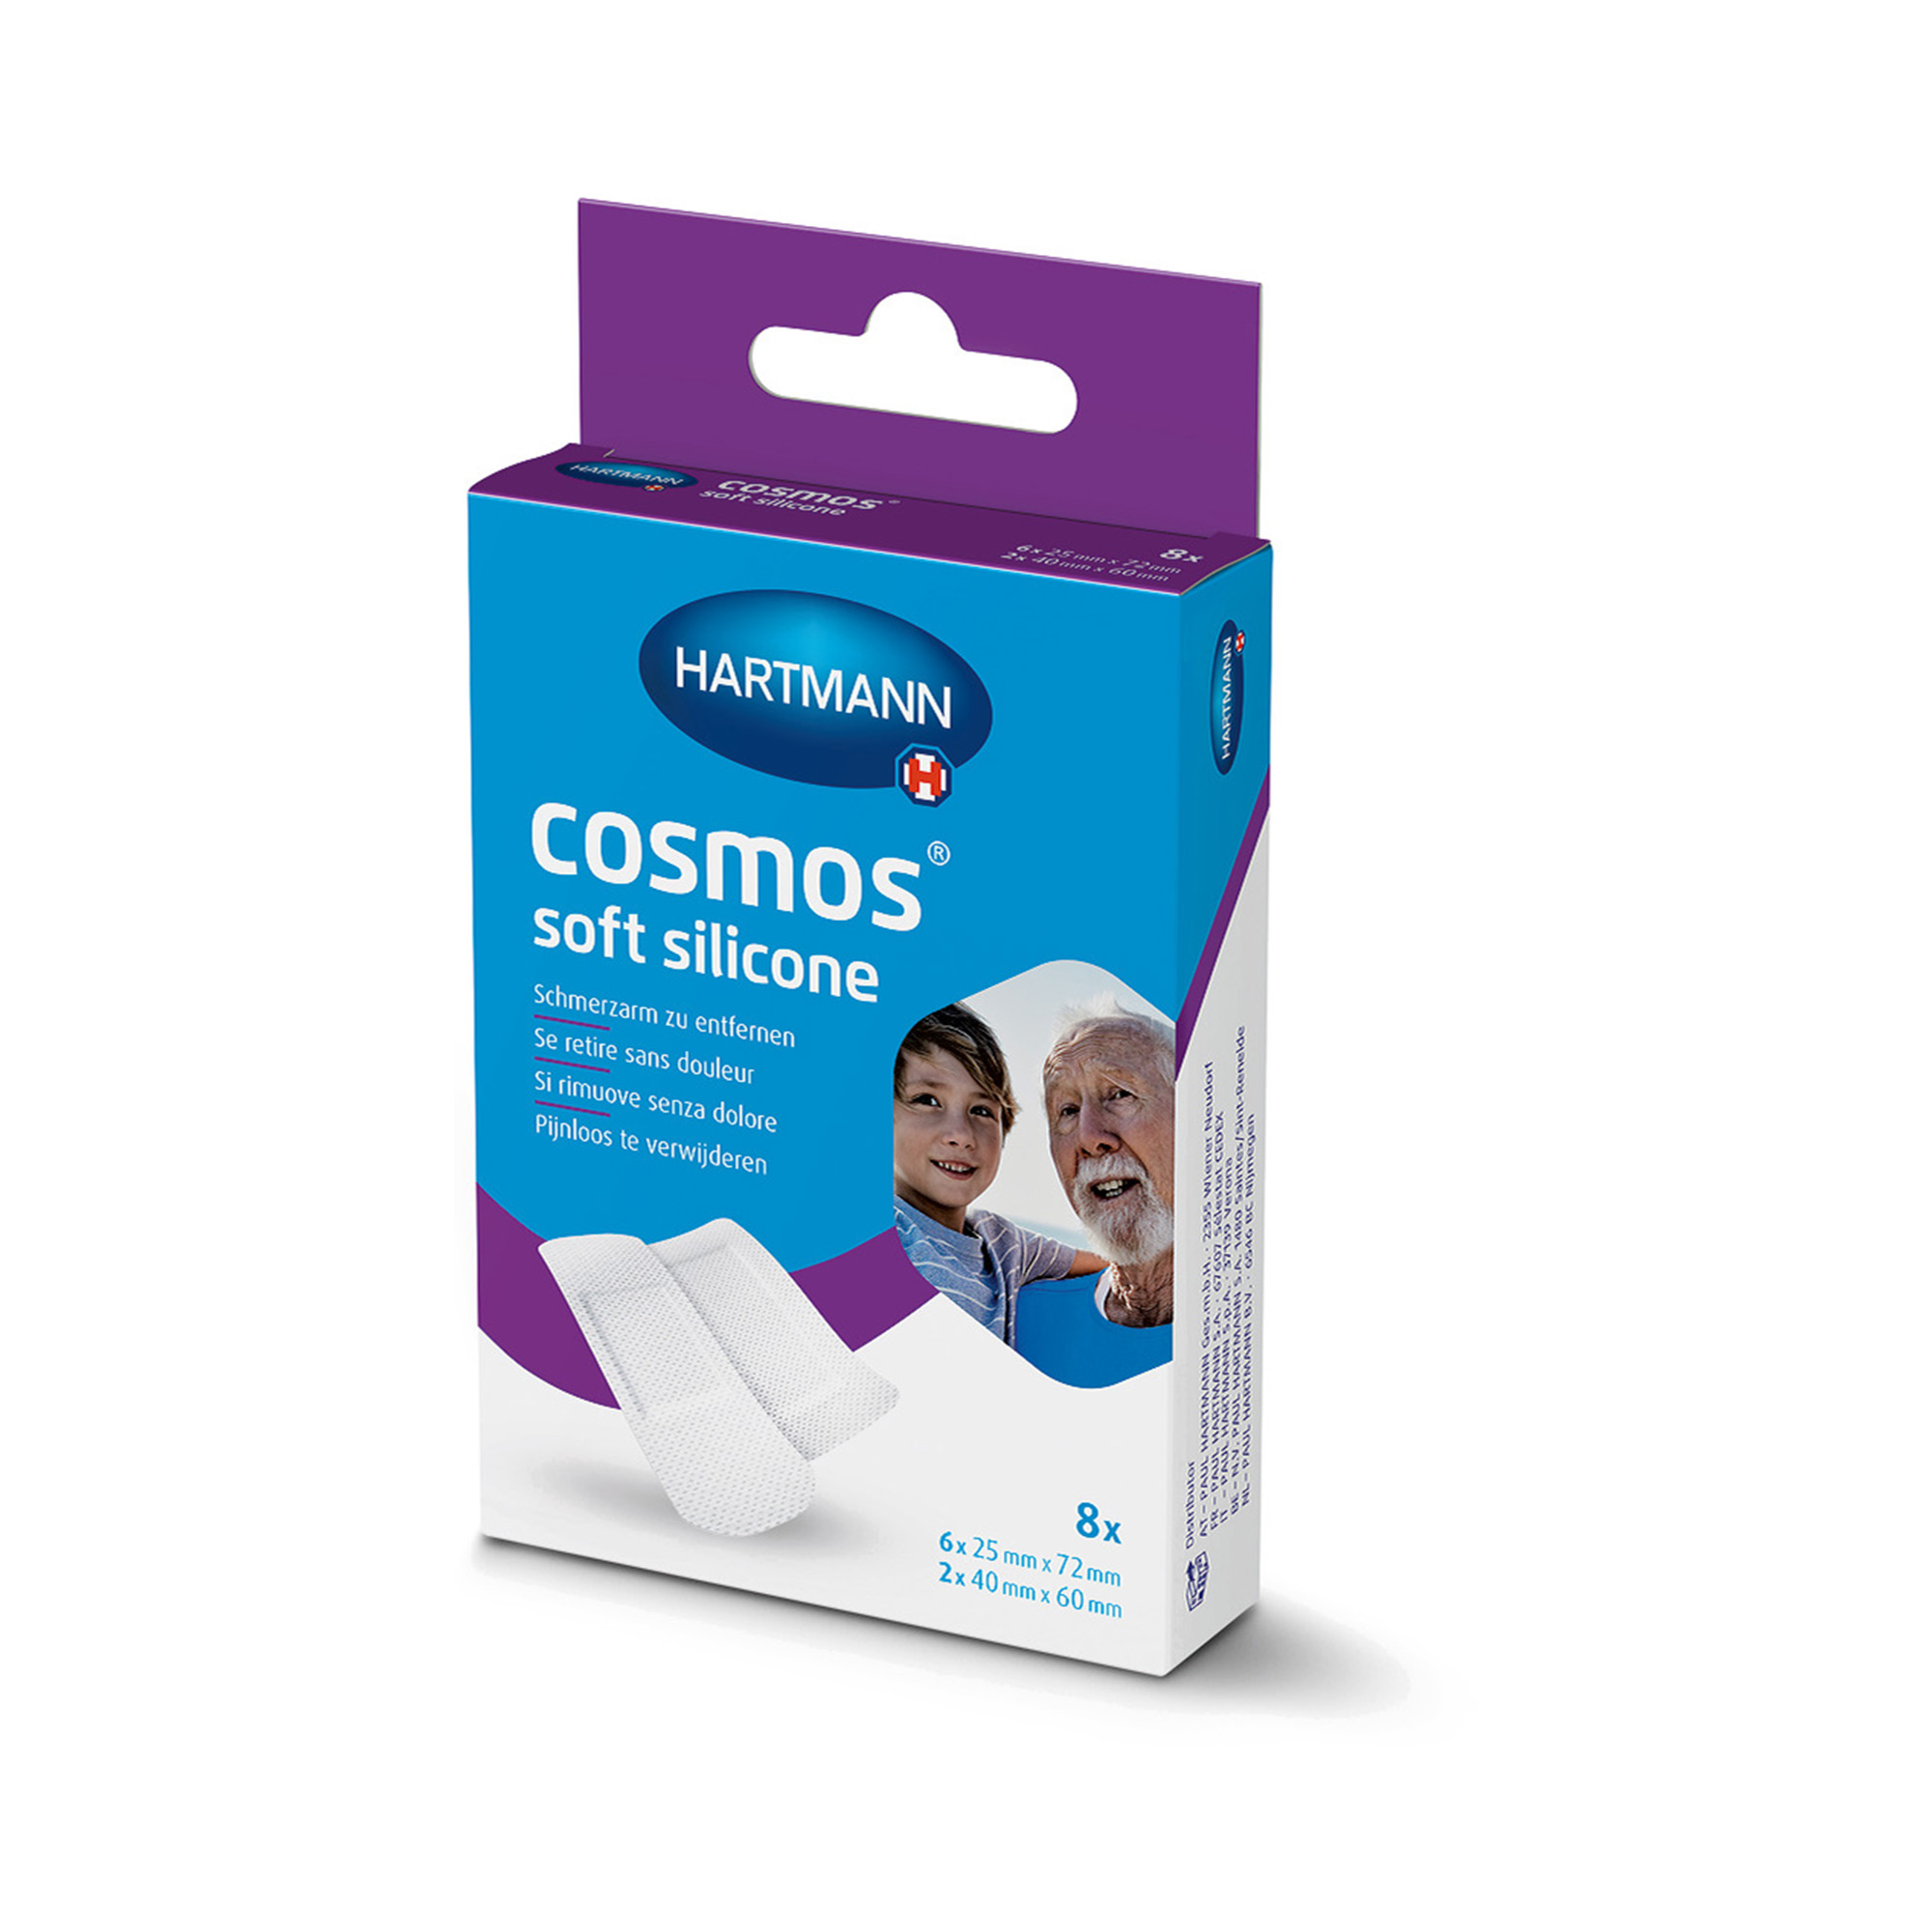 Hartmann Cosmos® soft silicone Pflasterstrips in 2 verschiedenen Größen